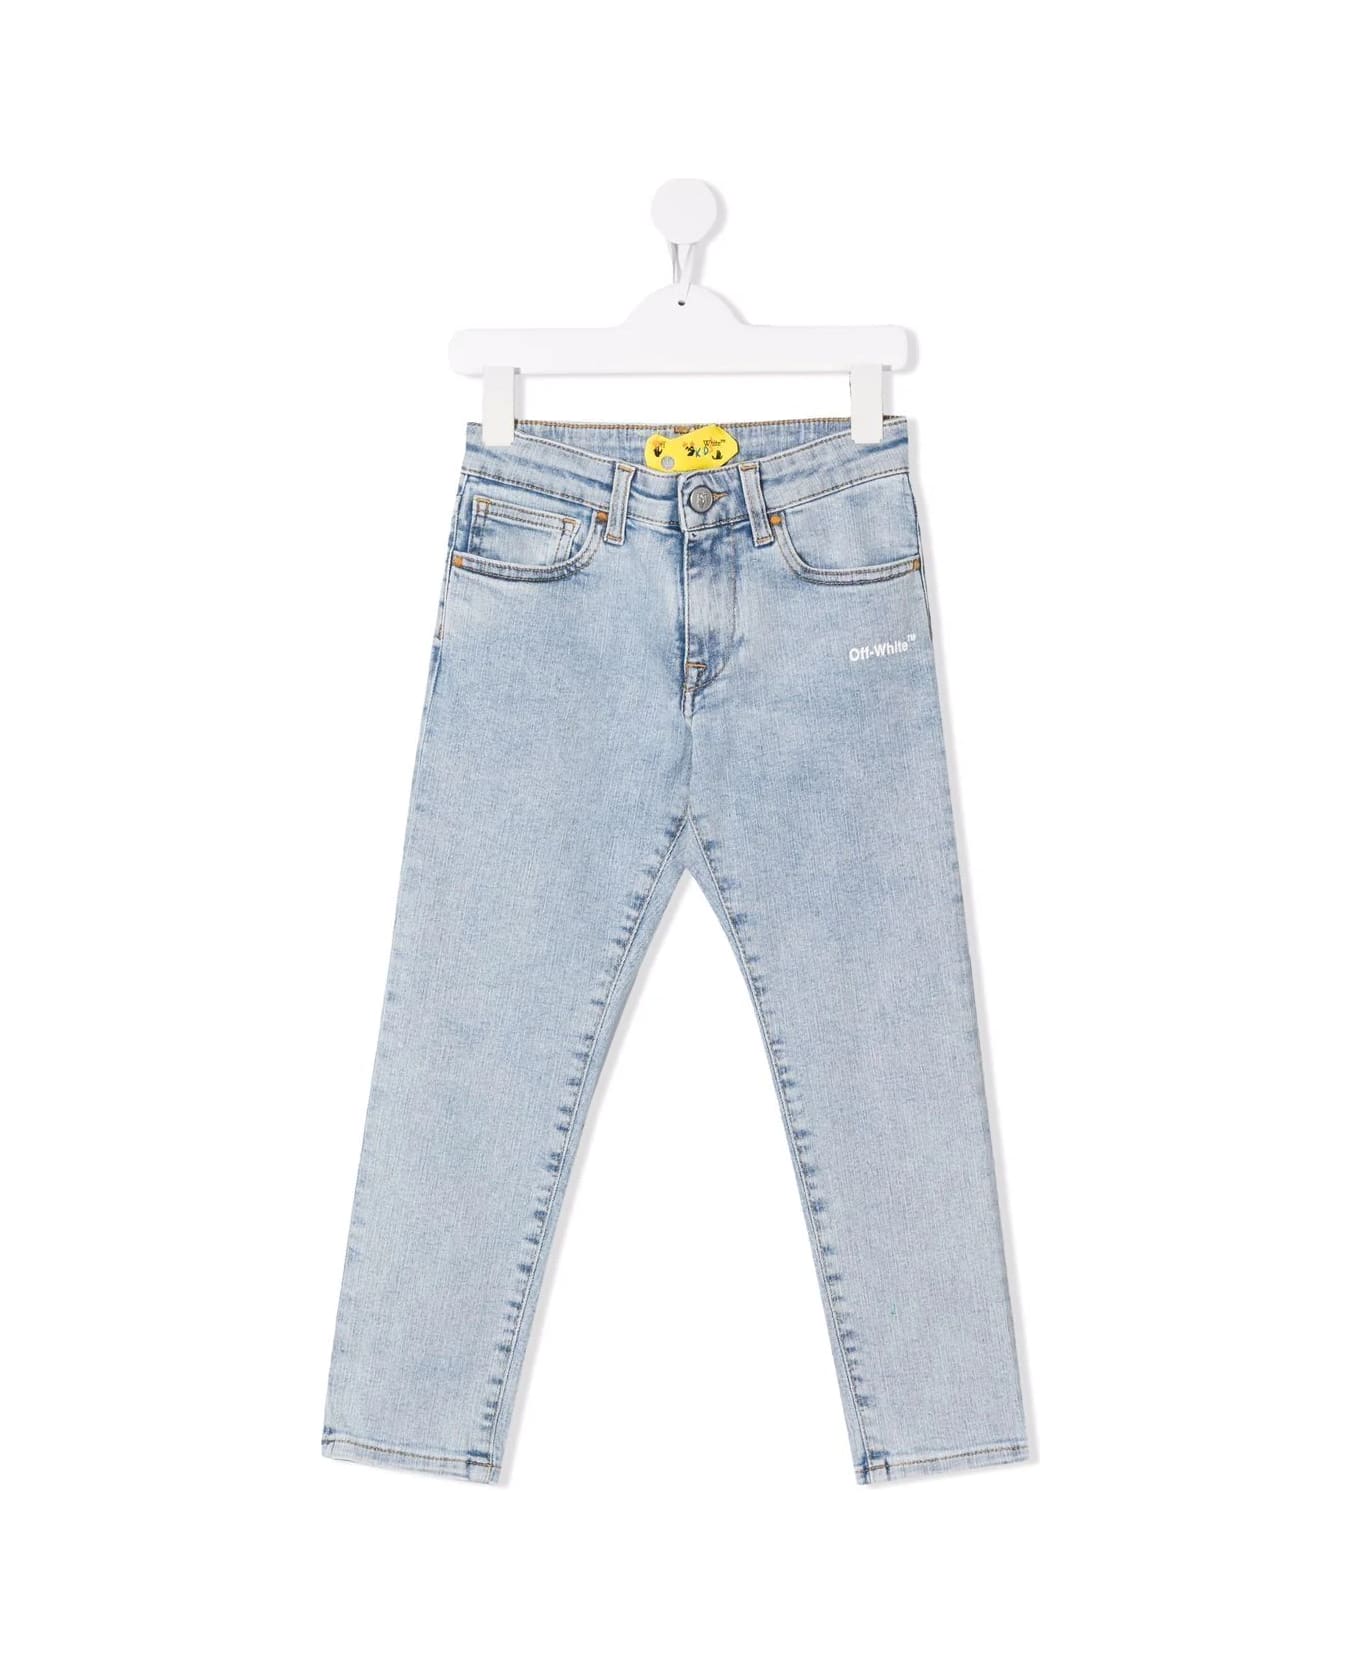 Off-White Kids Ow Helvetica Jeans In Light Denim - Light blue